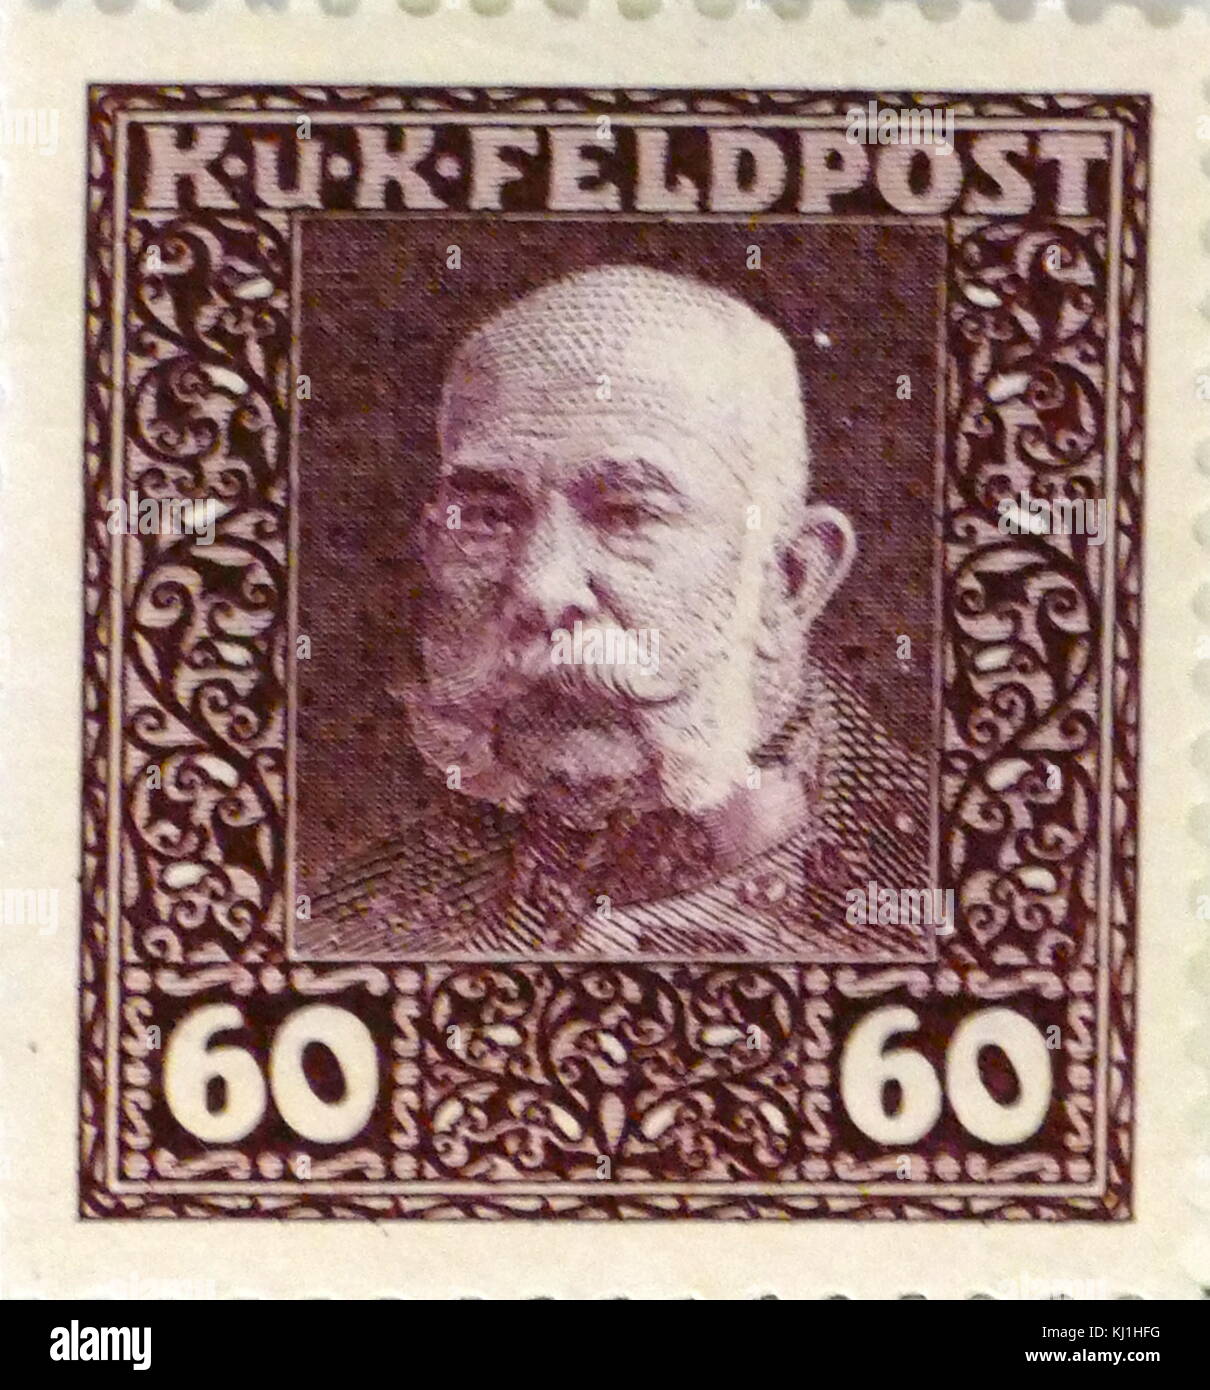 Poste représentant austro-hongrois, Franz Joseph I ou François-Joseph I (1830 - 1916) fut Empereur d'Autriche et Roi de Hongrie, de la Croatie et de la Bohème du 2 décembre 1848 jusqu'à sa mort le 21 novembre 1916. Banque D'Images